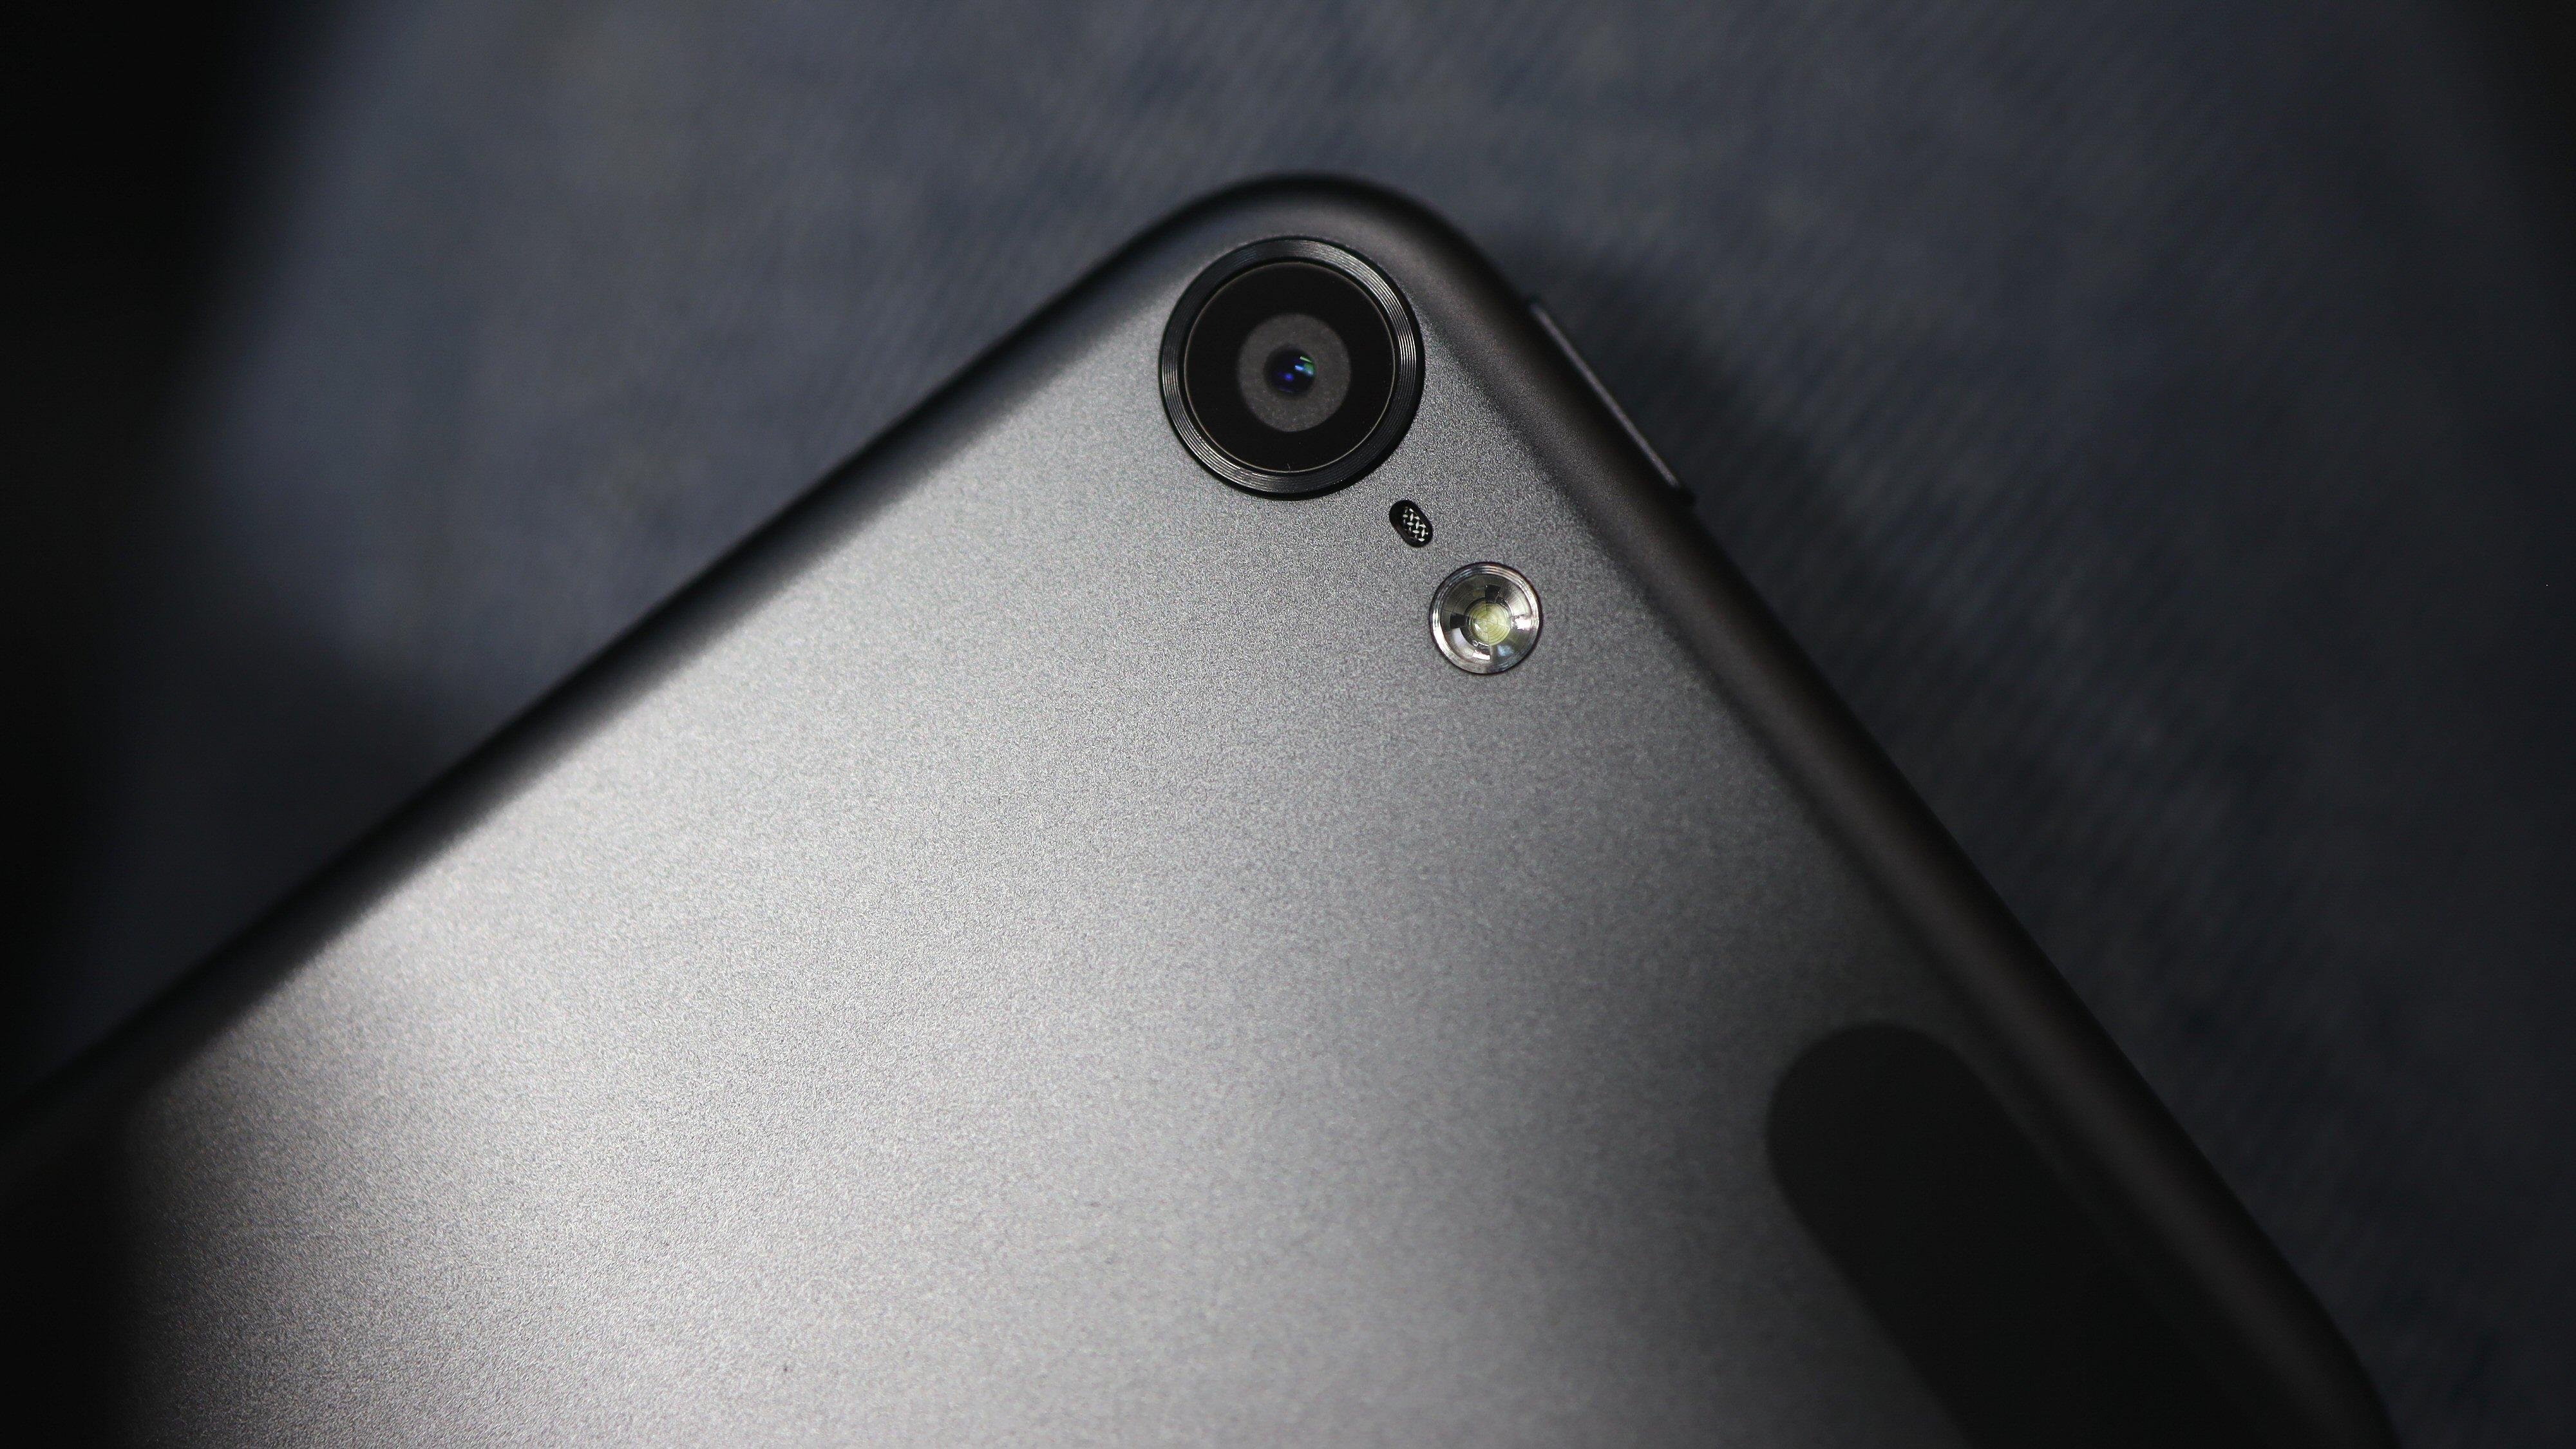 Apple iPod touch har kamera, blits og mikrofon, men en iPhone vil kunne ta bedre bilder og video.